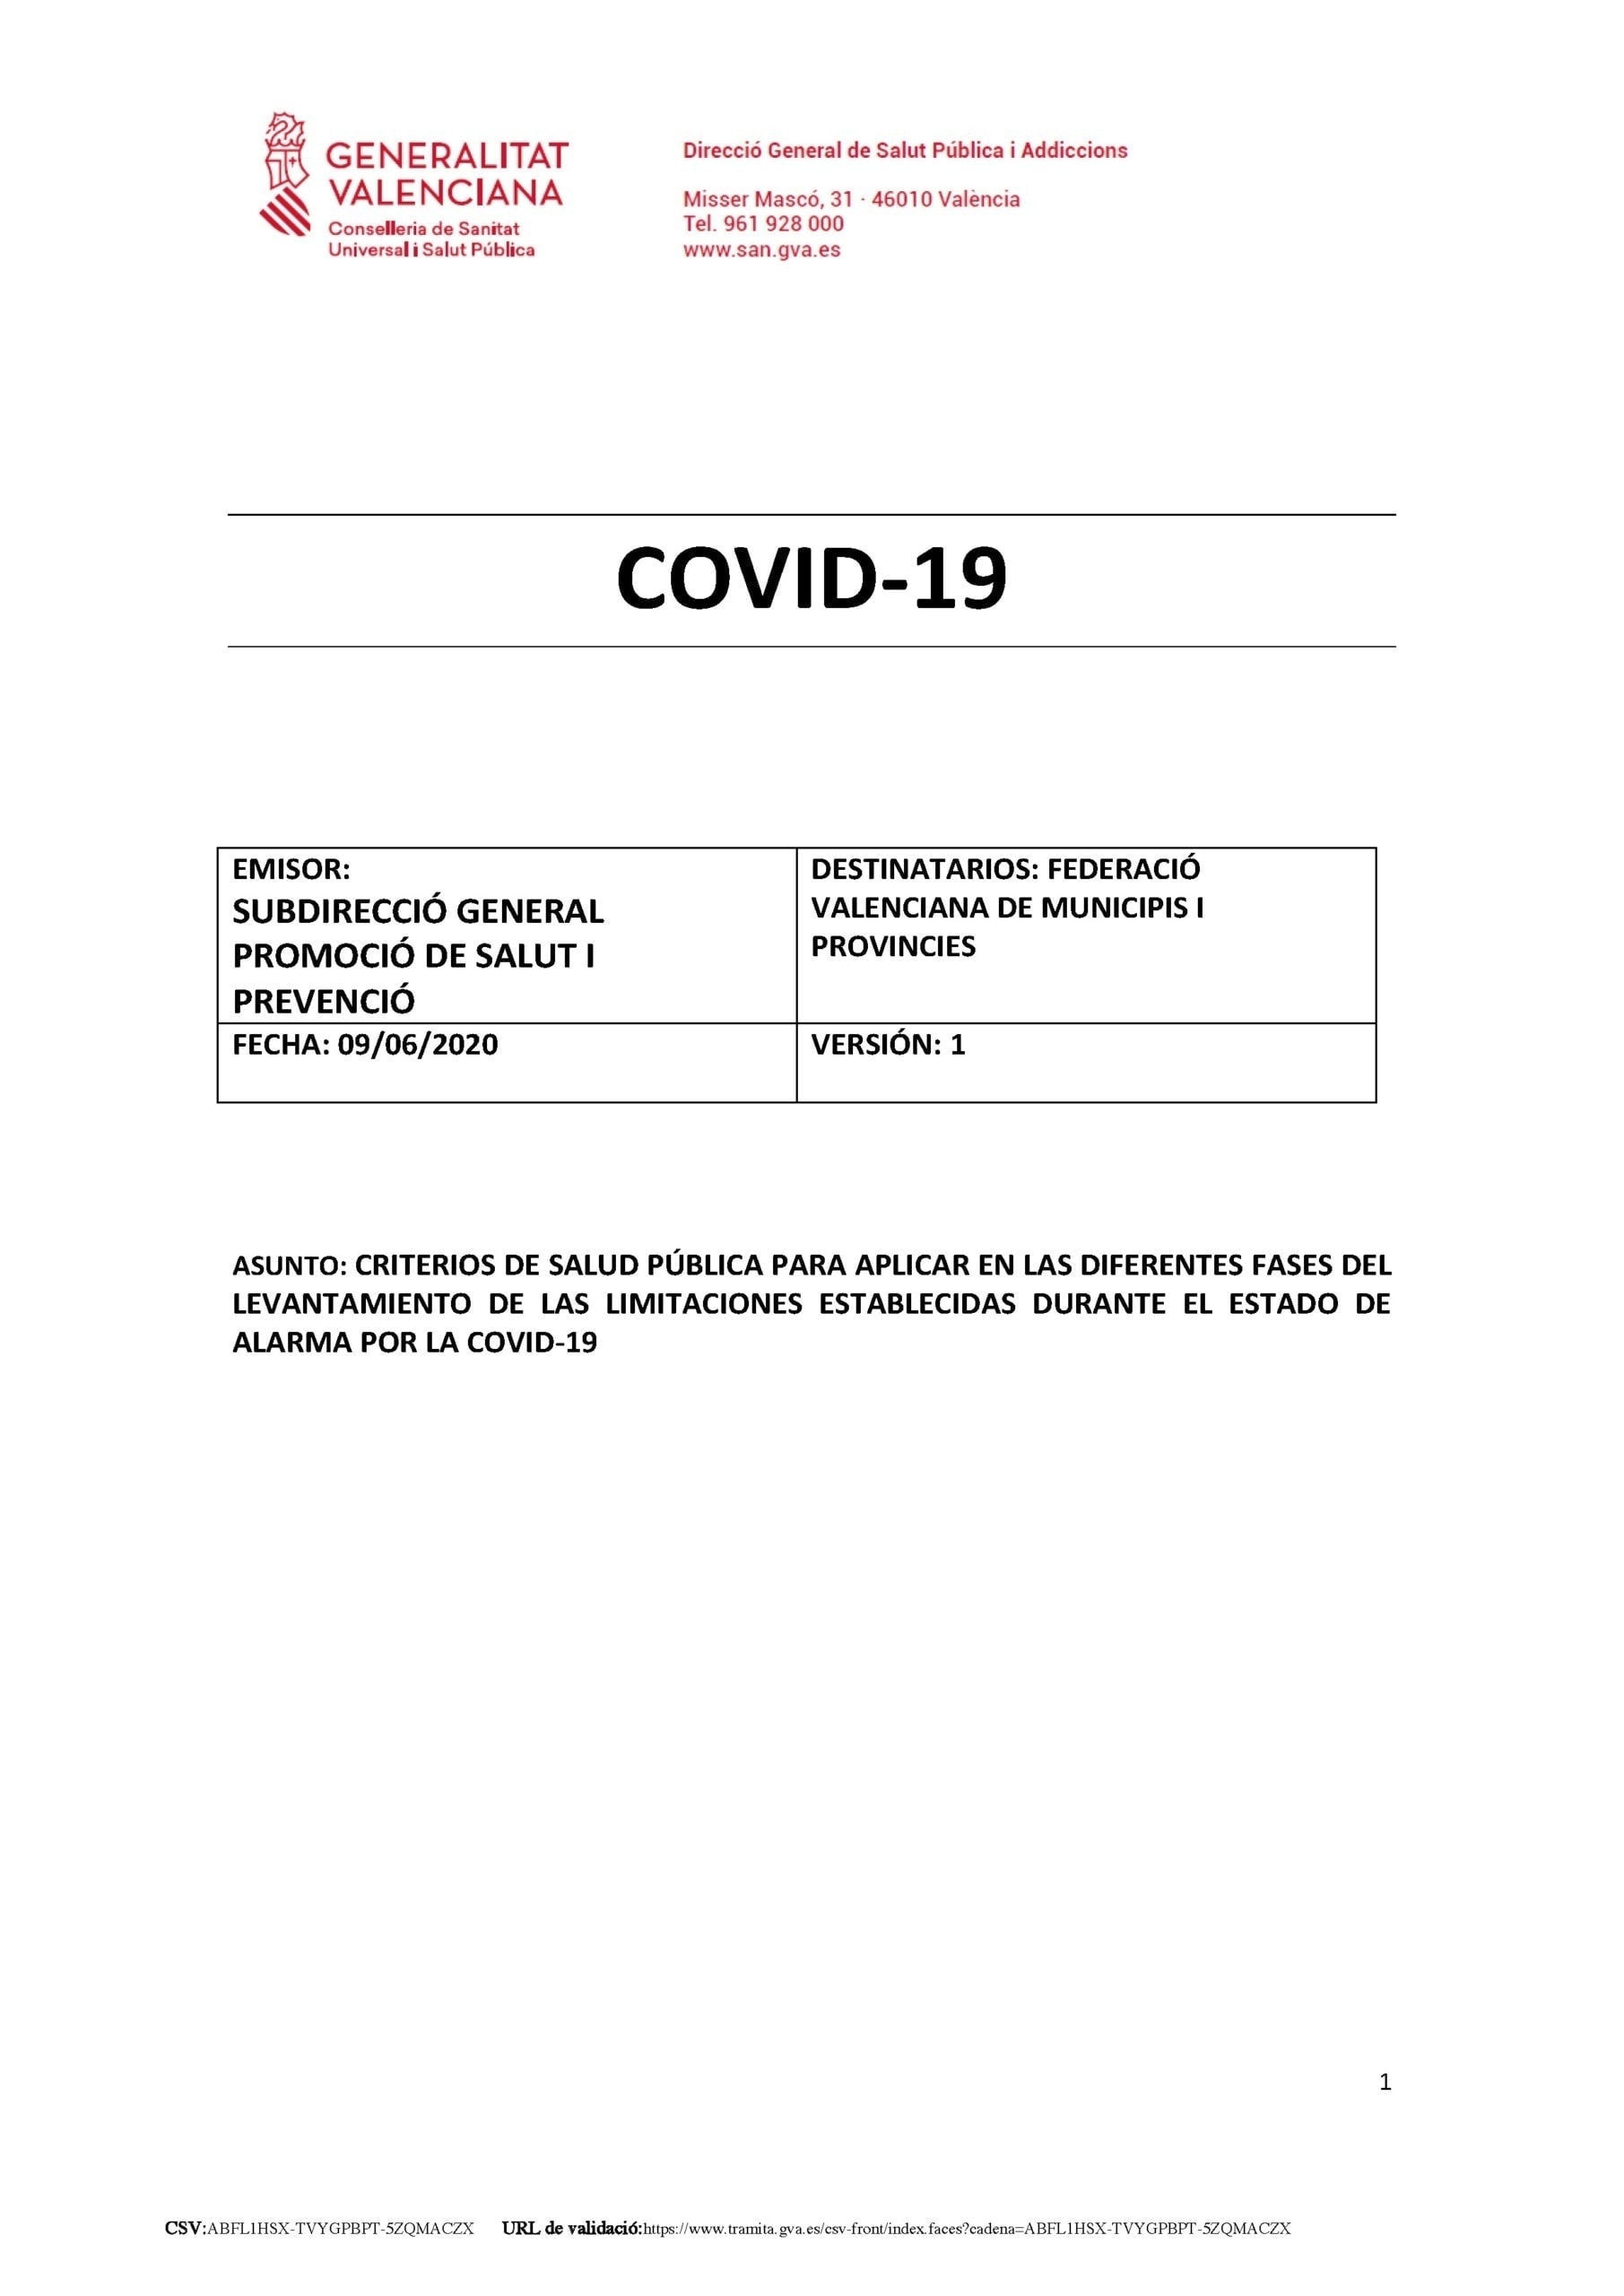 COVID-19 Subdirecció General de Salut i Prevenció